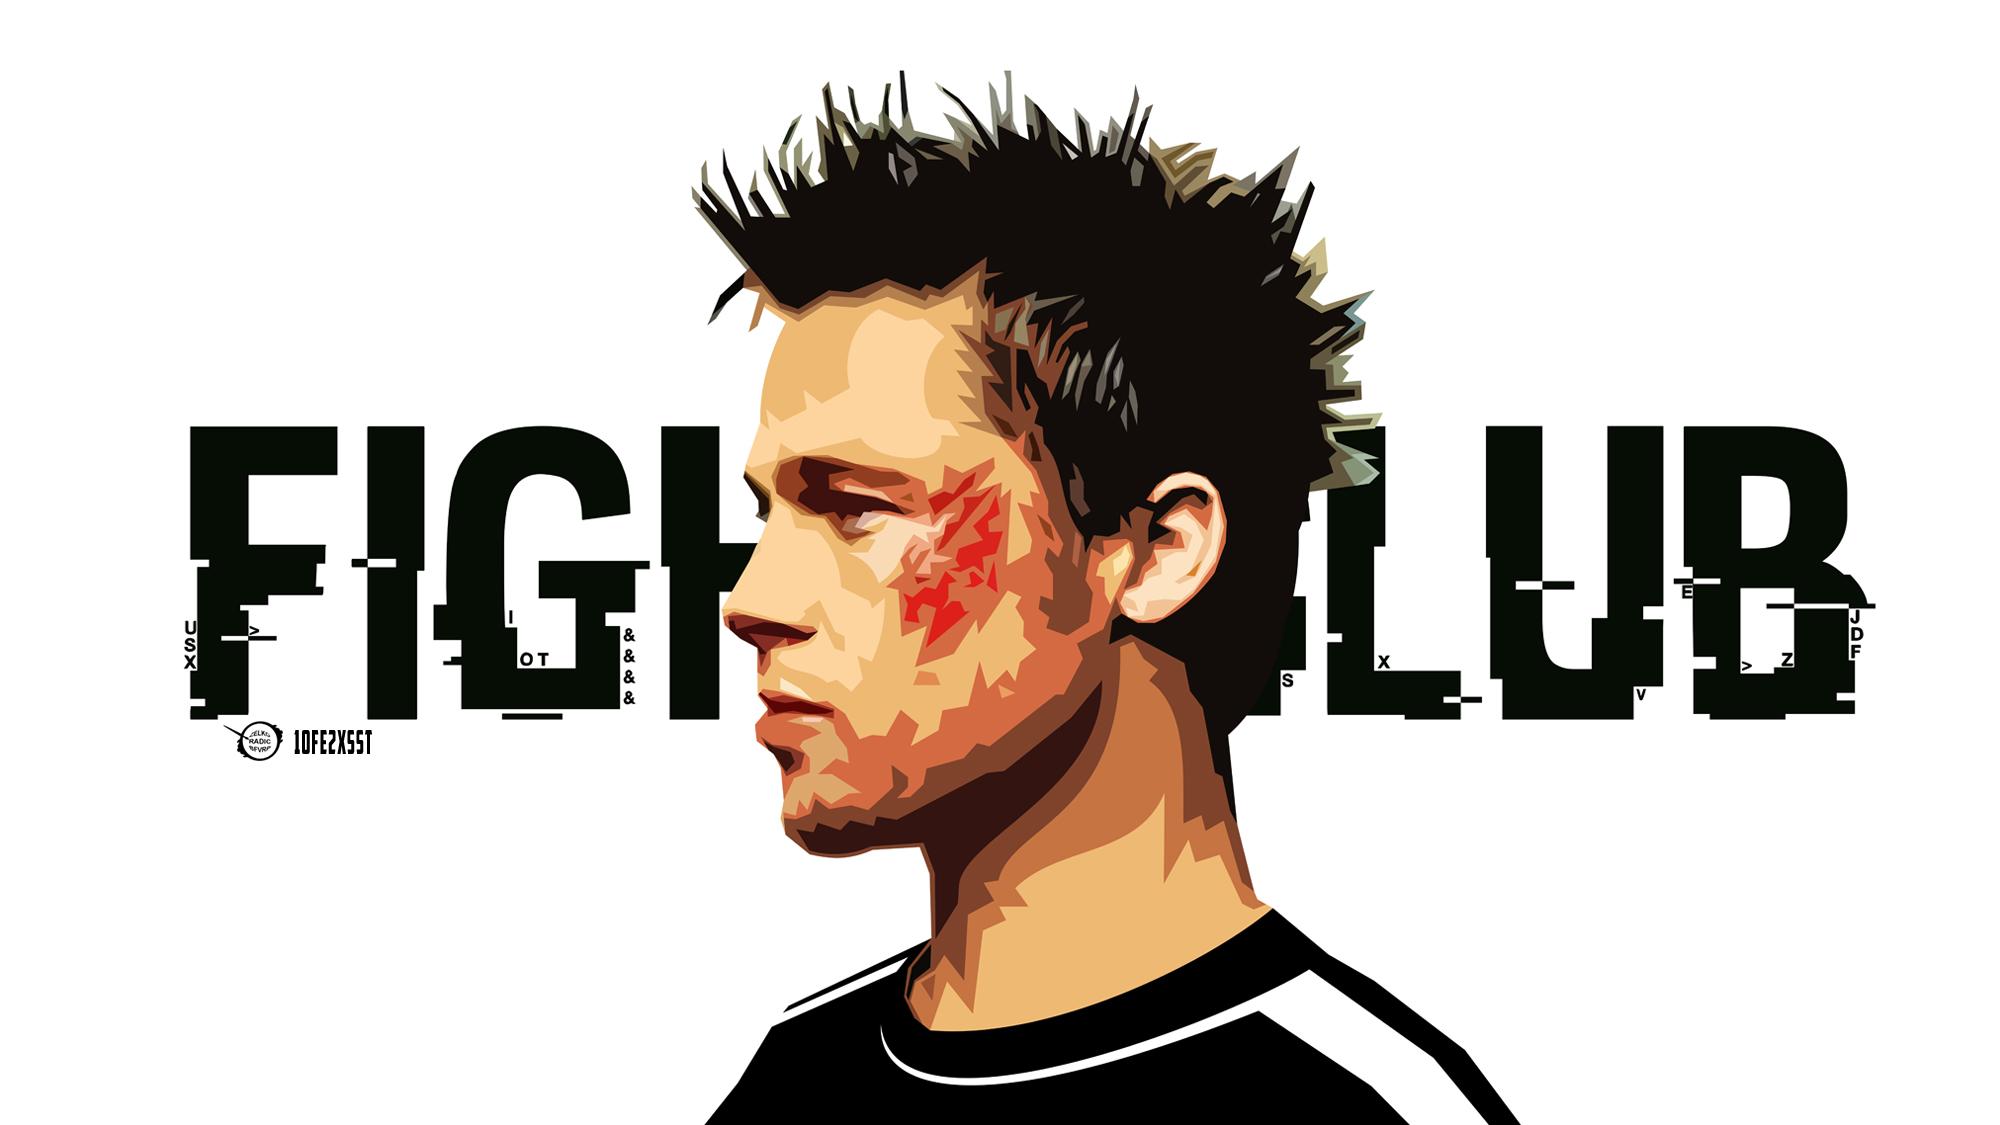 2000 x 1125 · jpeg - Fight Club HD Wallpaper | Background Image | 2000x1125 | ID:800329 ...